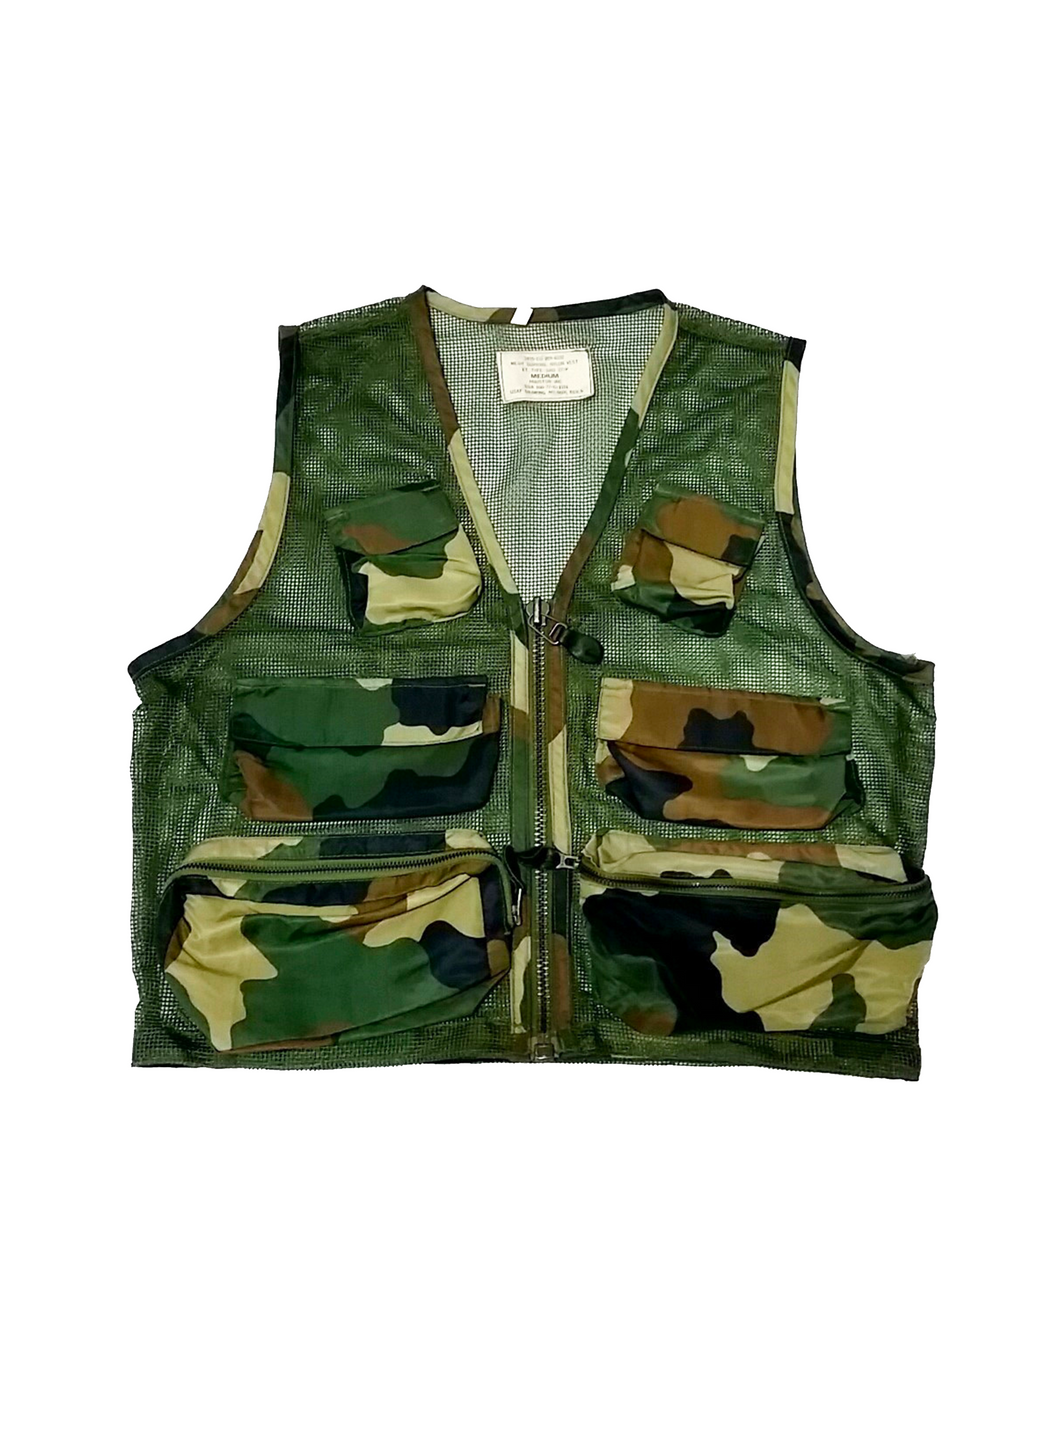 Houston Inc Camouflage Vest Size